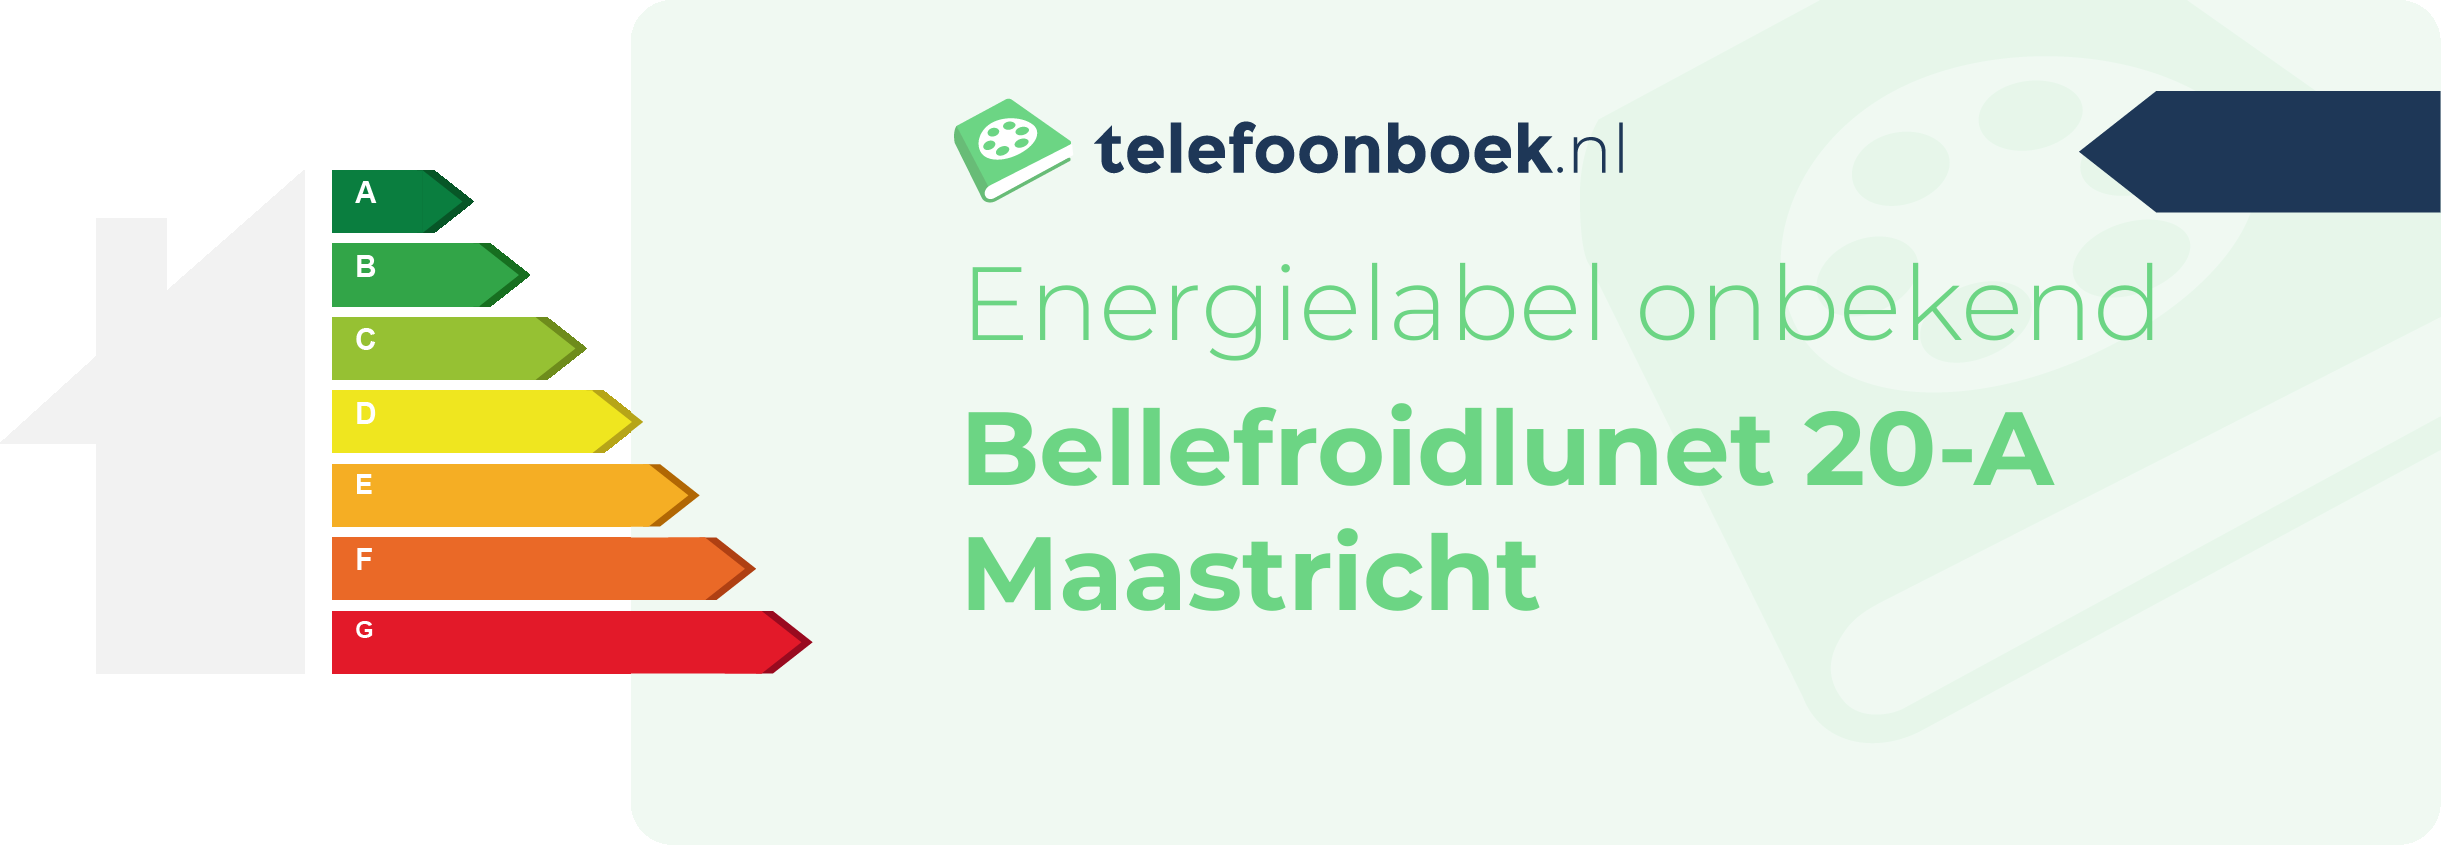 Energielabel Bellefroidlunet 20-A Maastricht